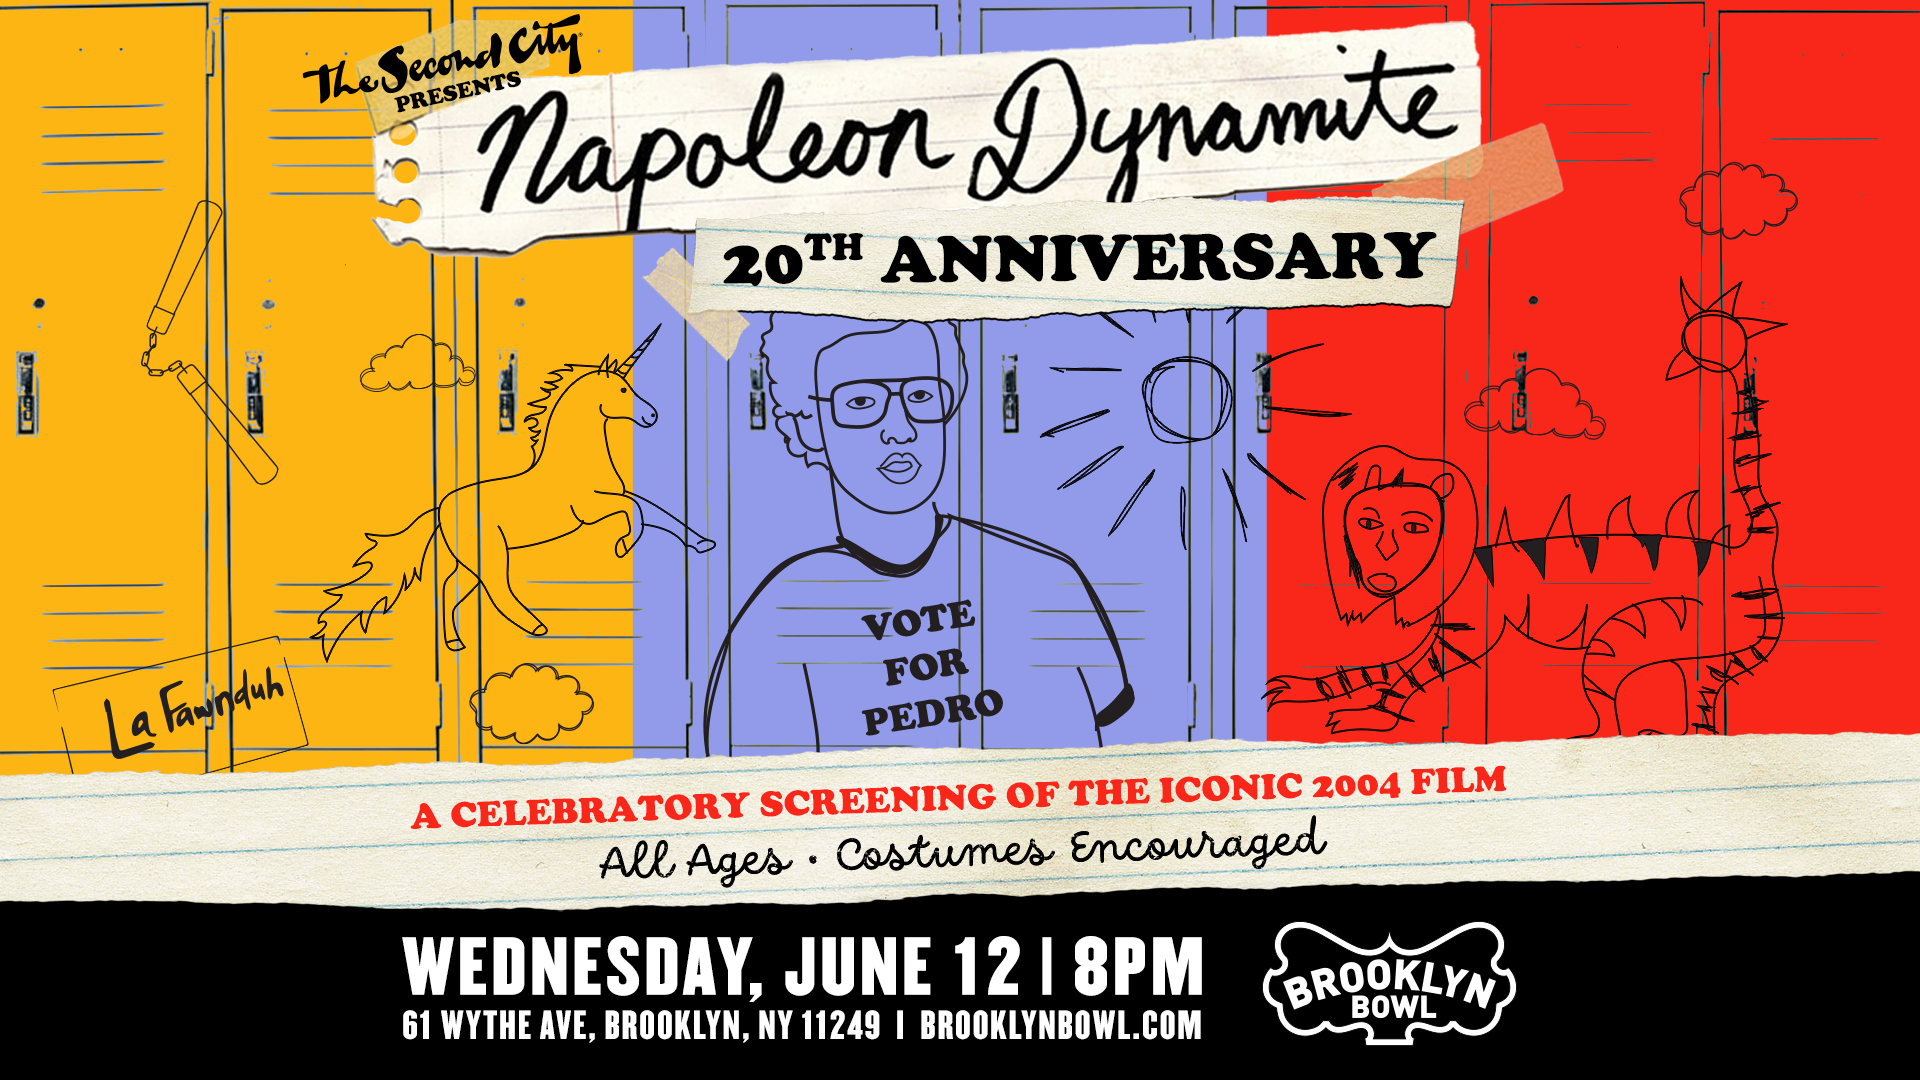 Napoleon Dynamite 20th Anniversary